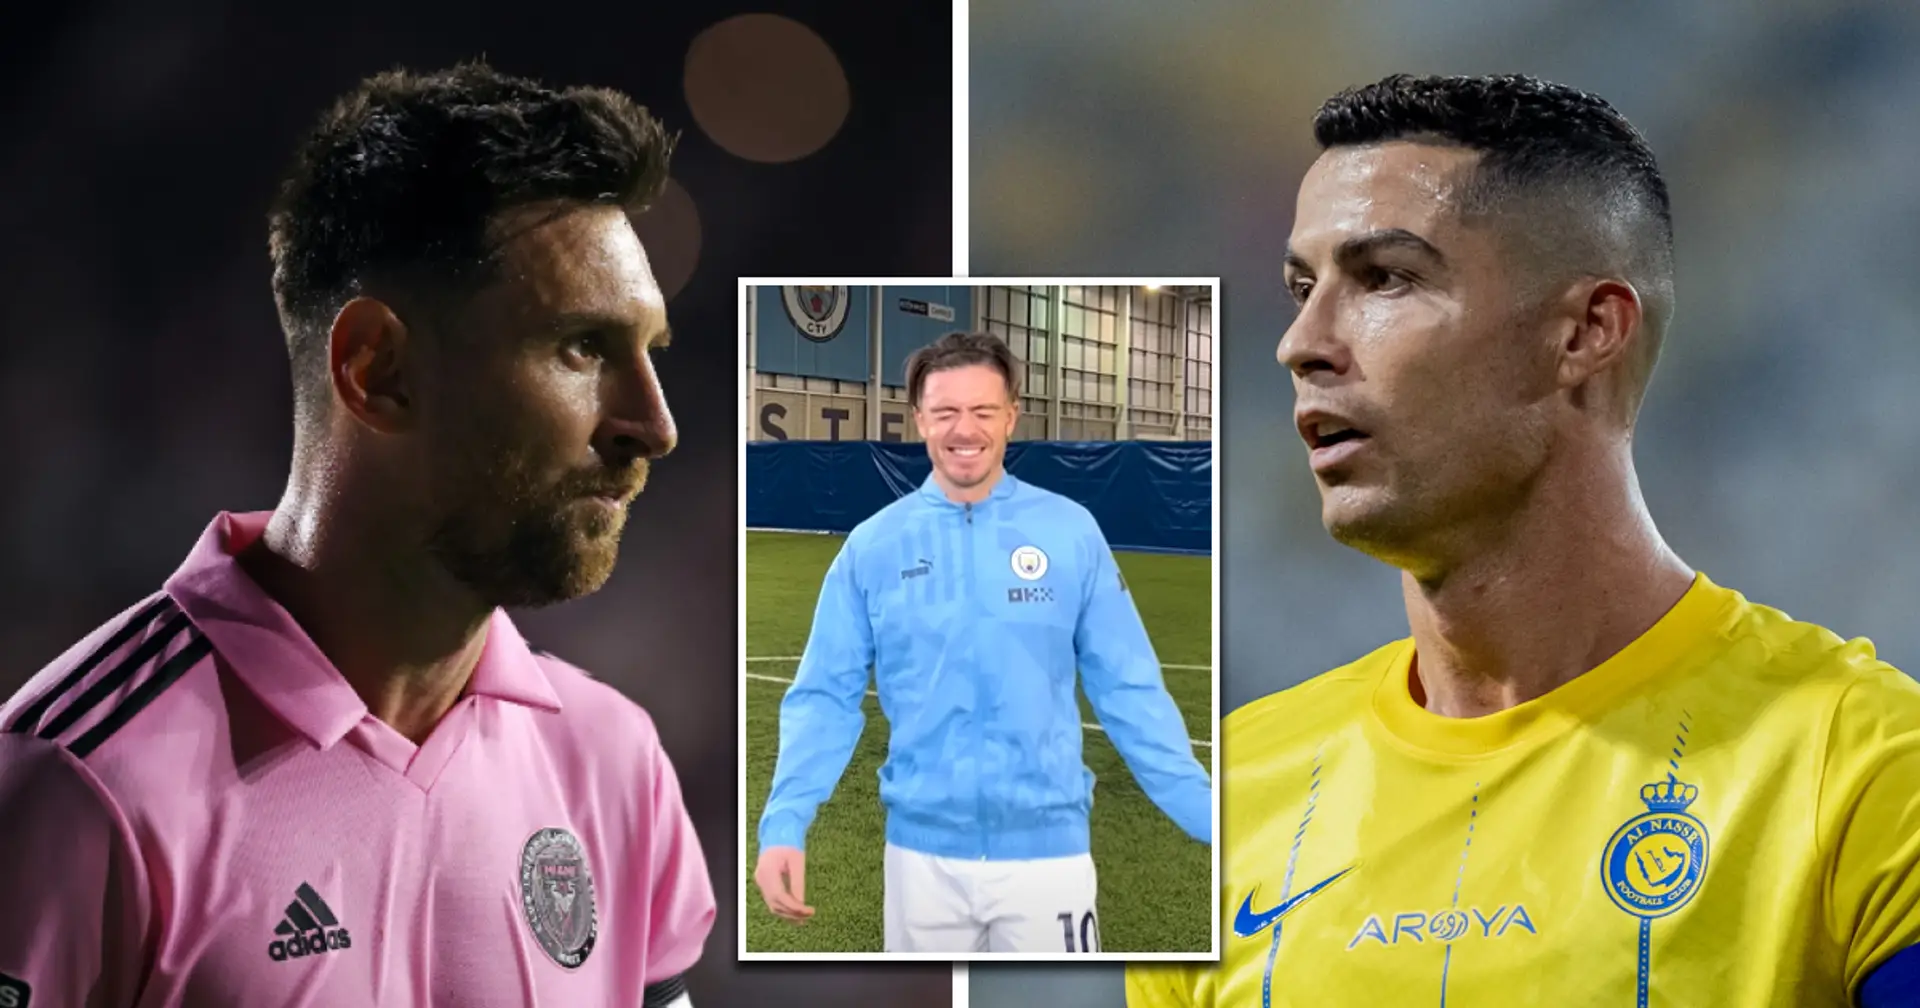 Grealish chooses between Messi and Ronaldo despite visible struggle